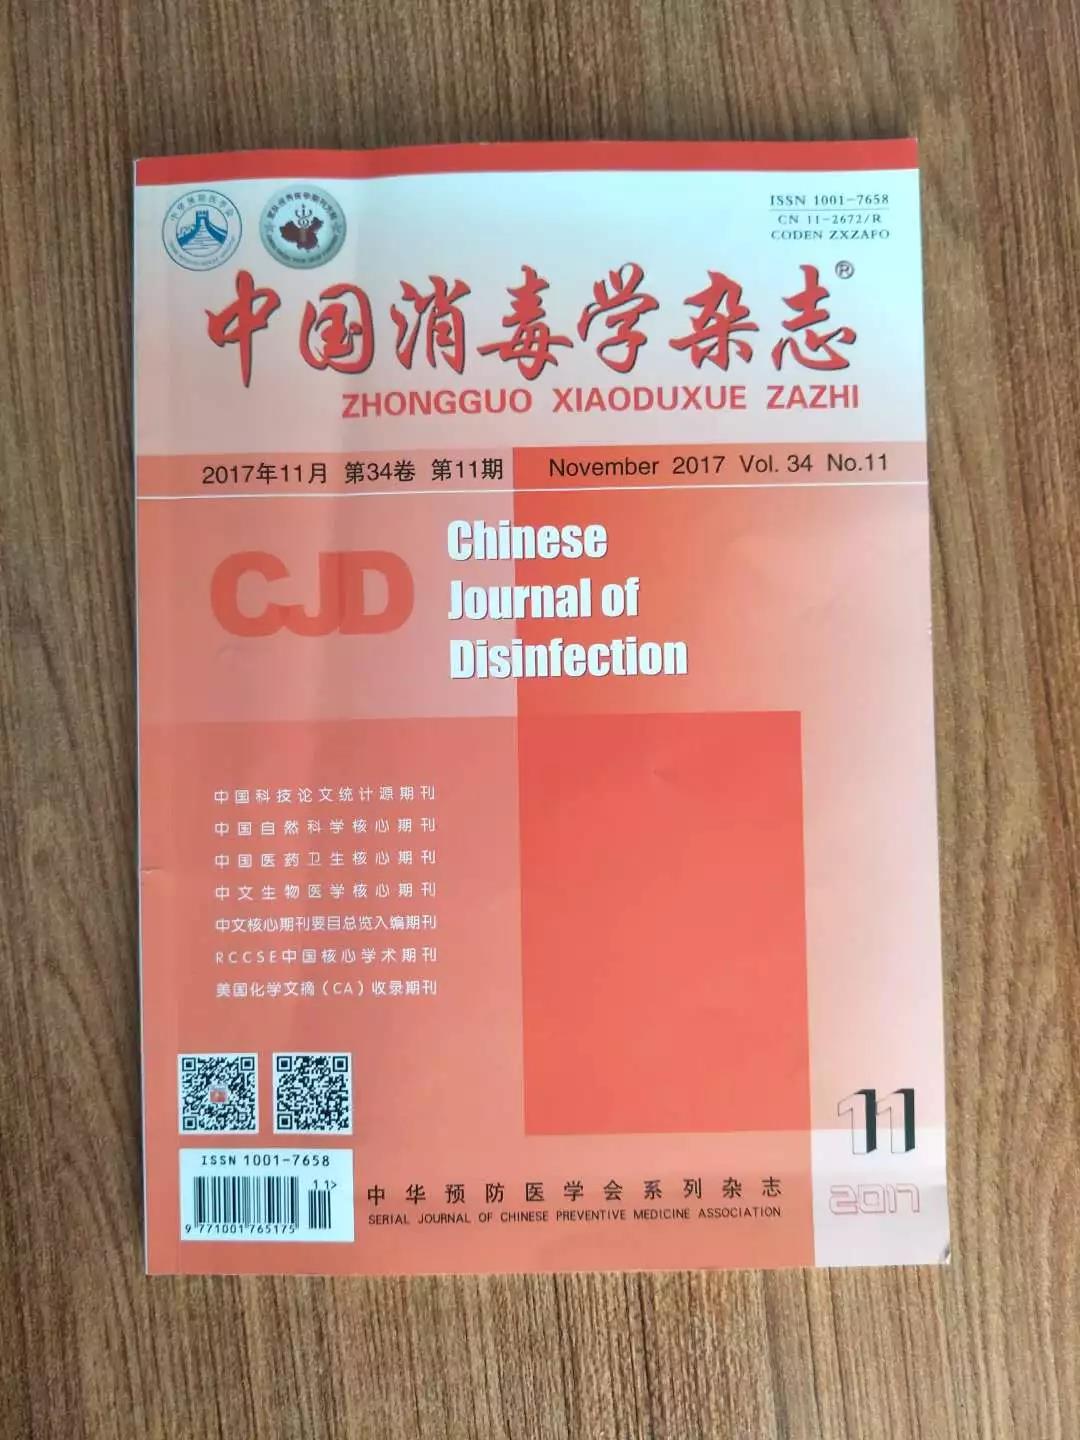 祝贺我公司论文被《中国消毒学杂志》收录并发表！！！